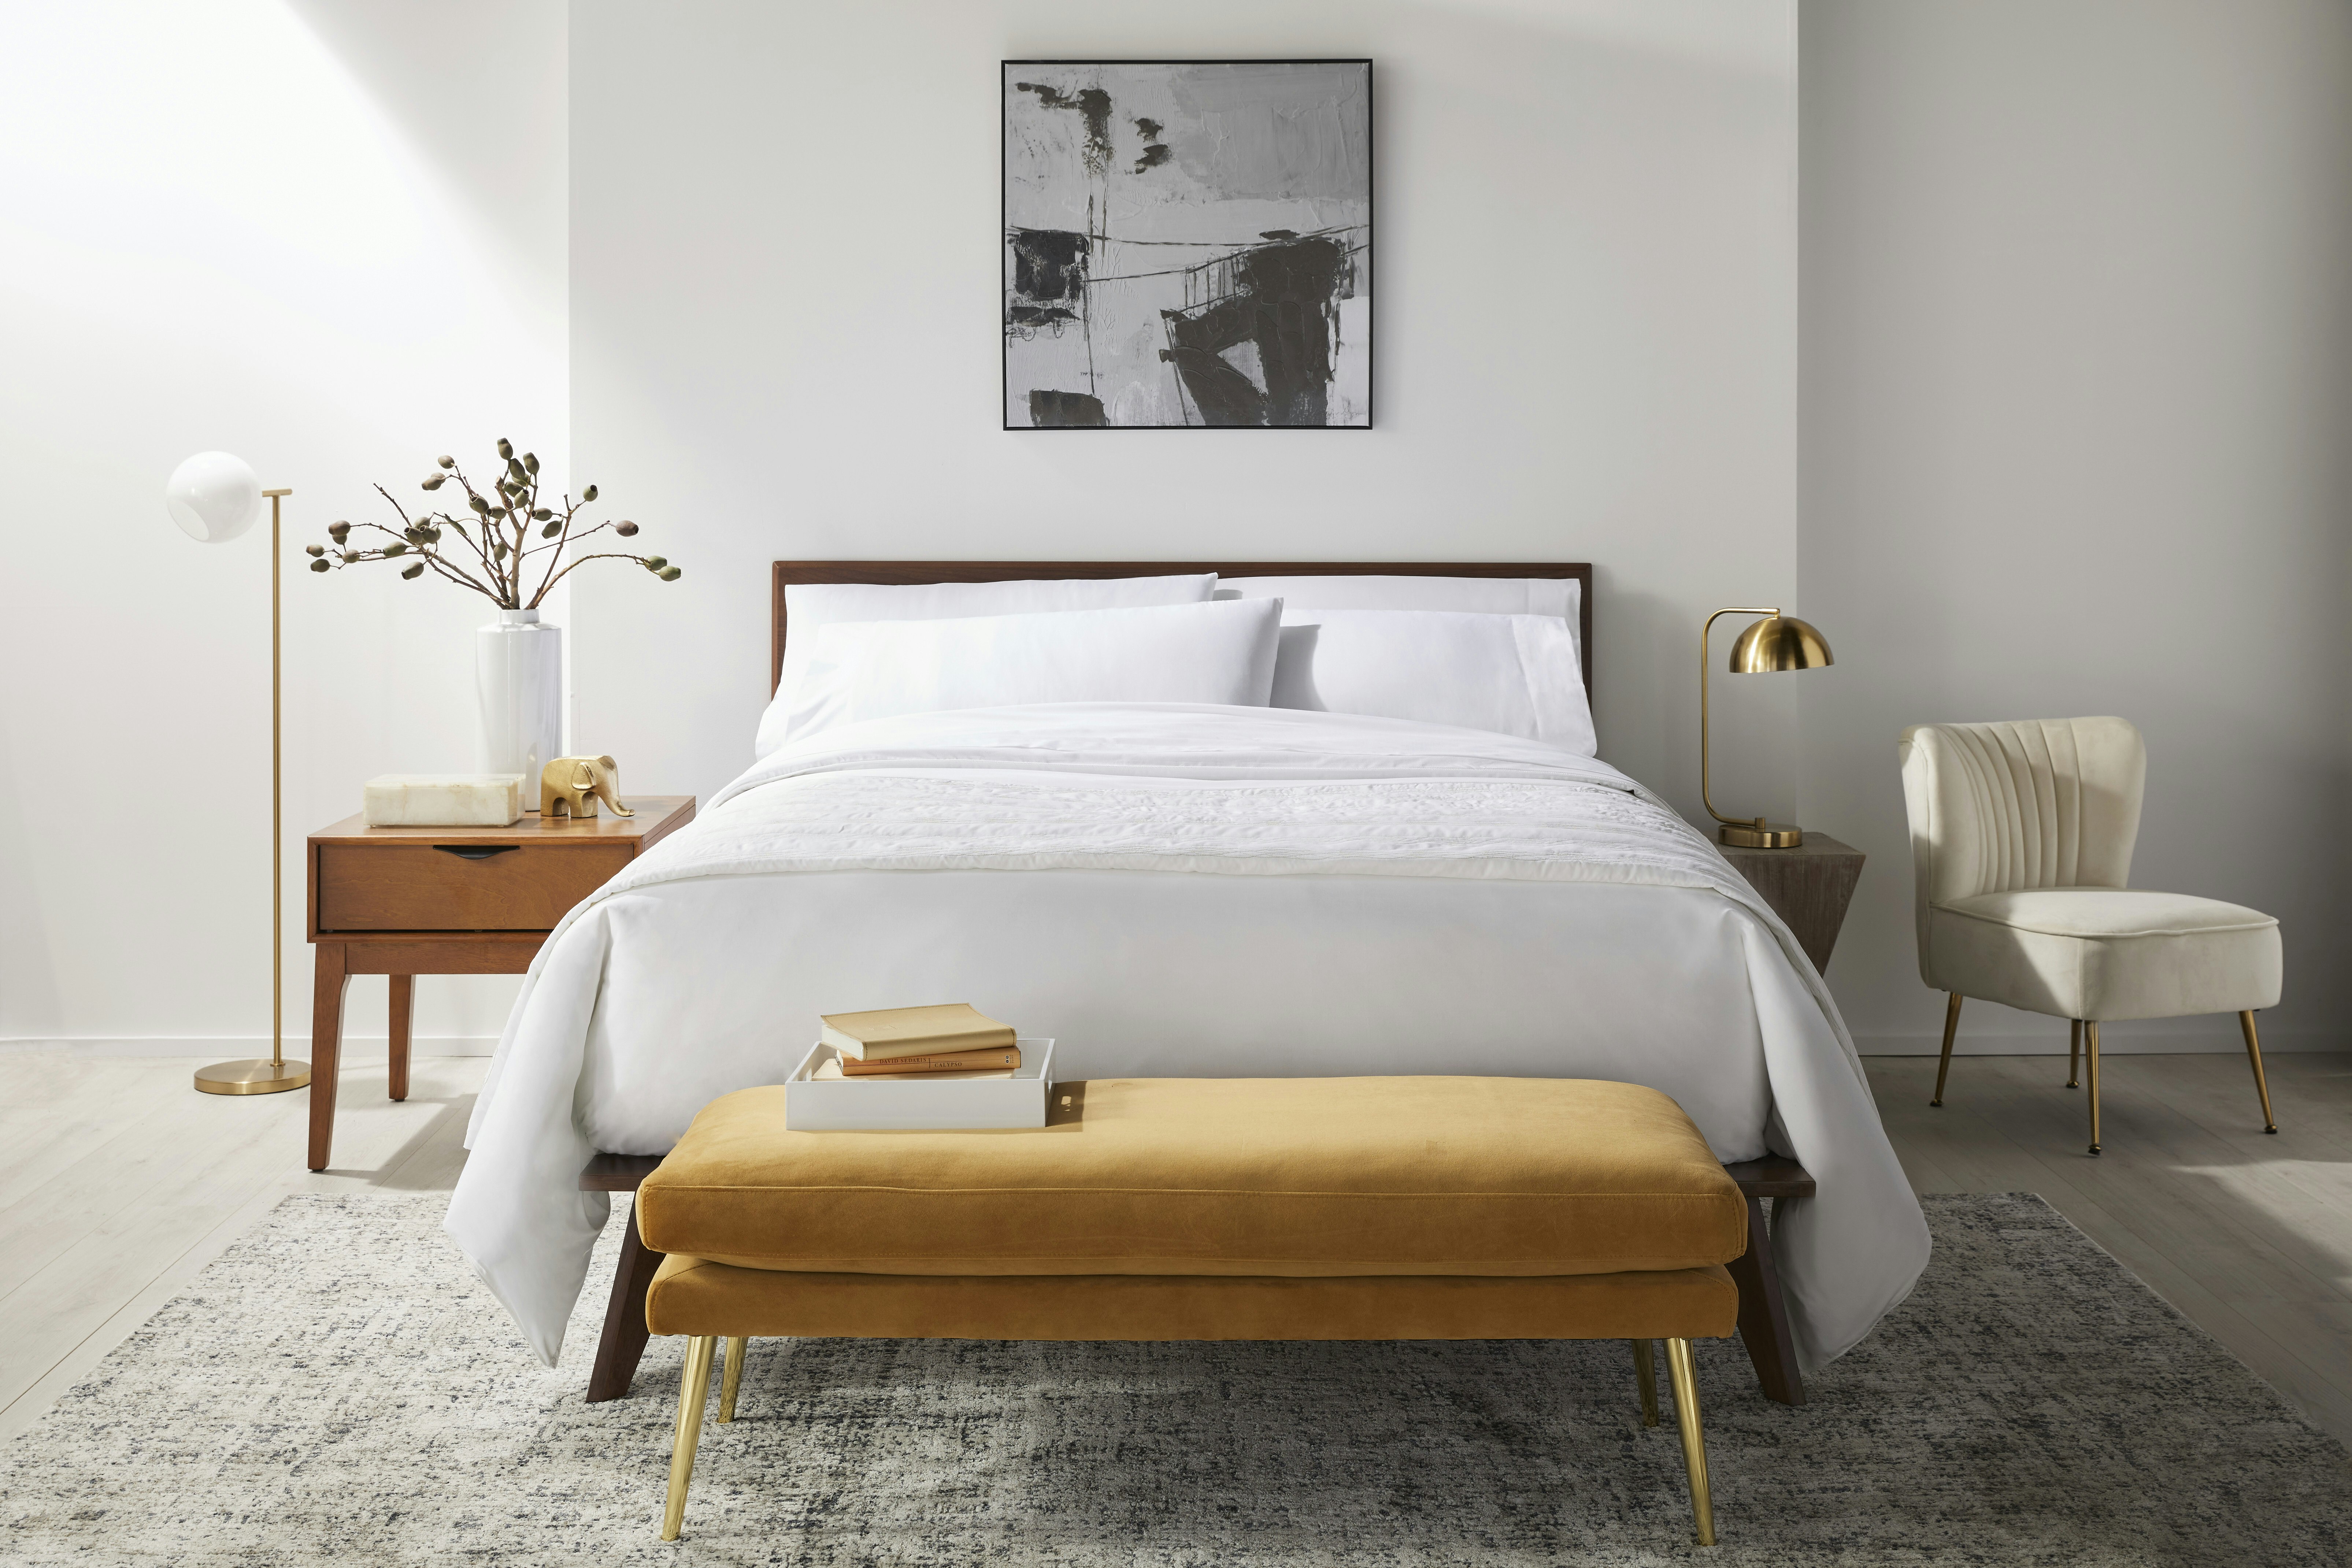 Buy Luxury Hotel Bedding from Marriott Hotels - Frameworks Bolster